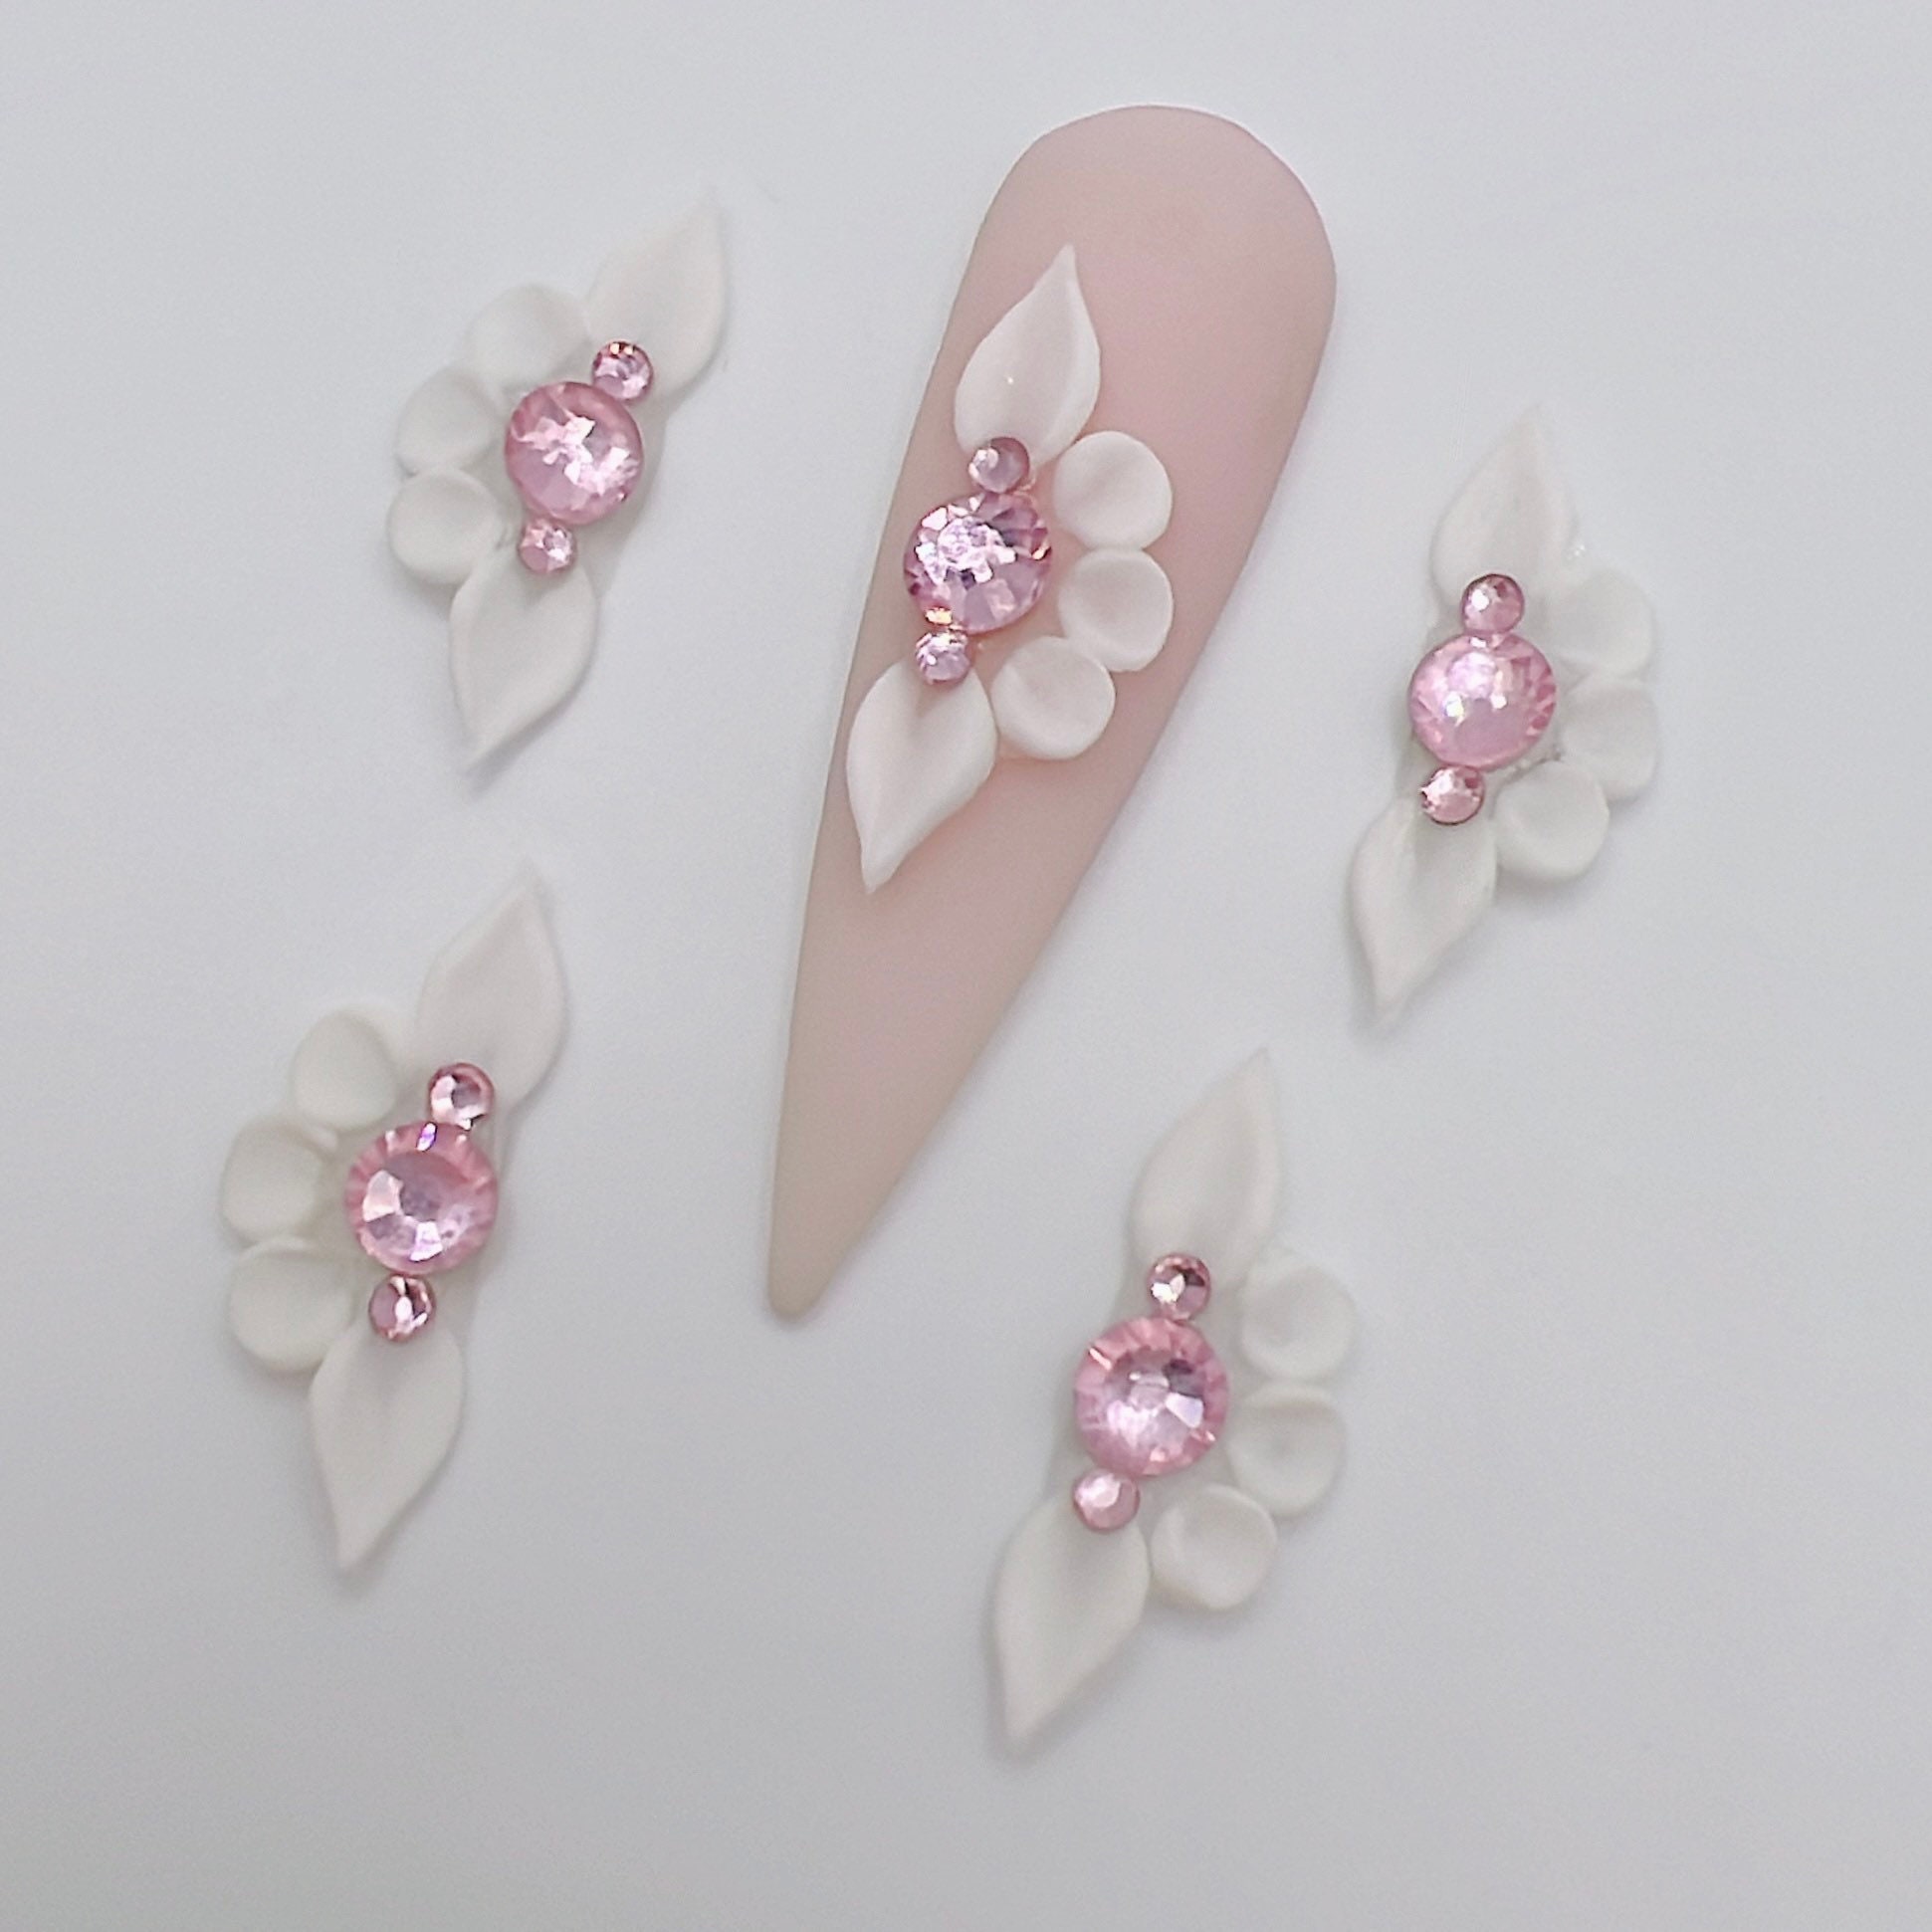 Set 8pcs 3D Nail Flowers - Acrylic Nail Flowers - 3D Flower Nails art | eBay